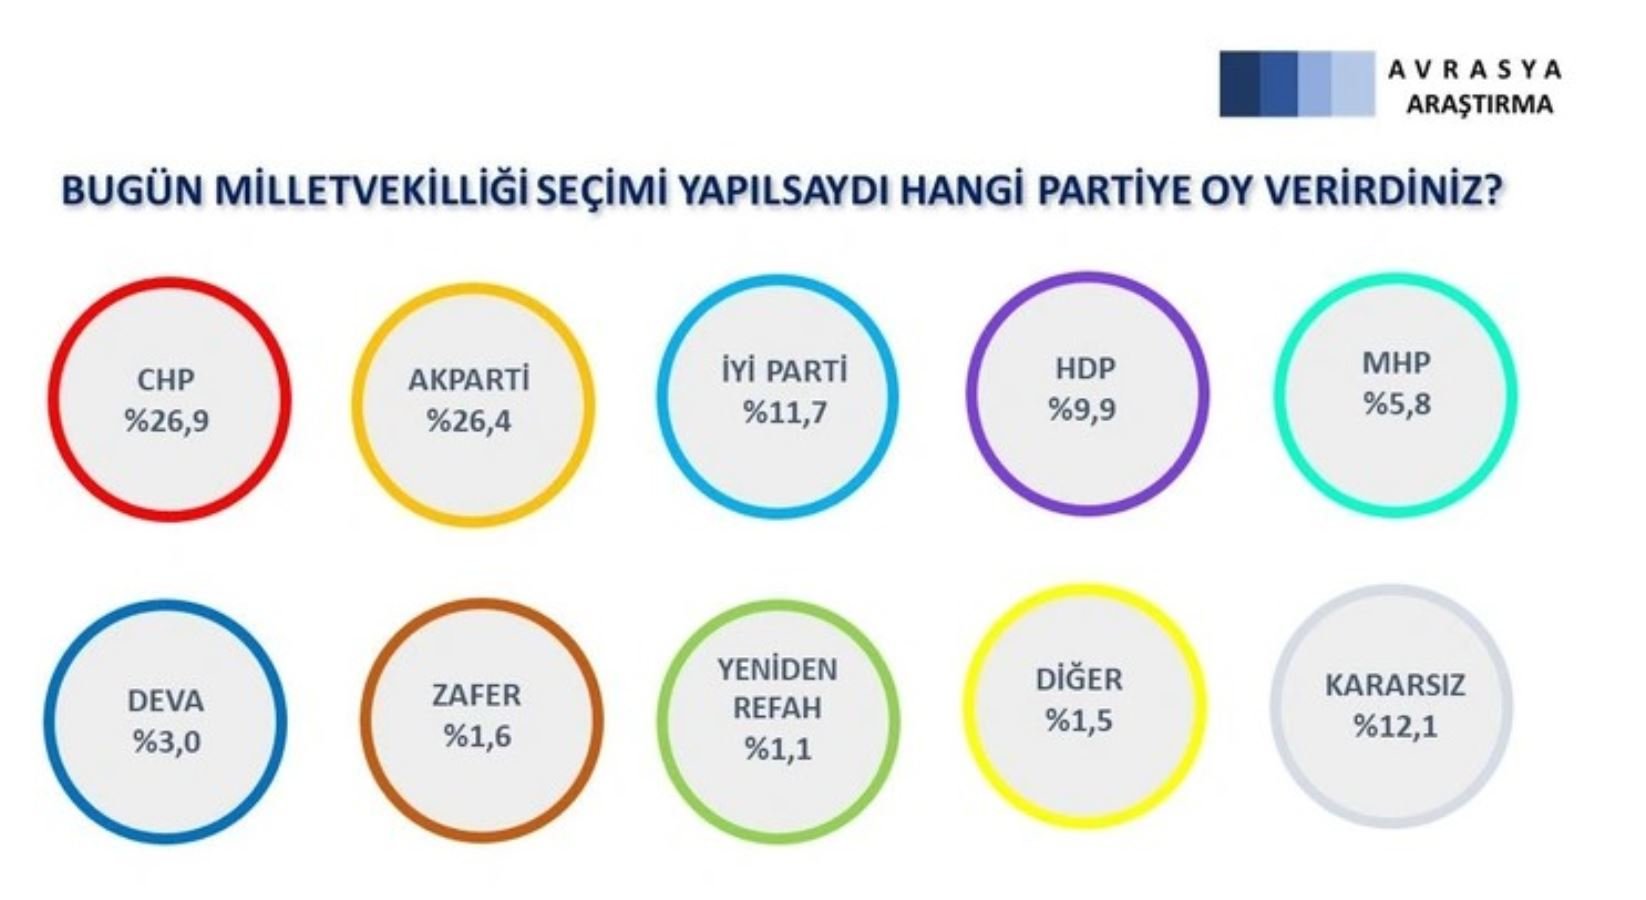 <p><strong>'Bugün milletvekilliği seçimi yapılsa oyunuzu kime verirsiniz?'</strong> sorusuna yurttaşlar; Yüzde 26,9 oranında CHP, yüzde 26,4 oranında AKP, yüzde 11,7 oranında İYİ Parti, yüzde 9,9 oranında HDP dedi. MHP'nin oy oranı ise 5,8'de kaldı. Kararsızların oranı ise yüzde 12,1 oldu. </p>